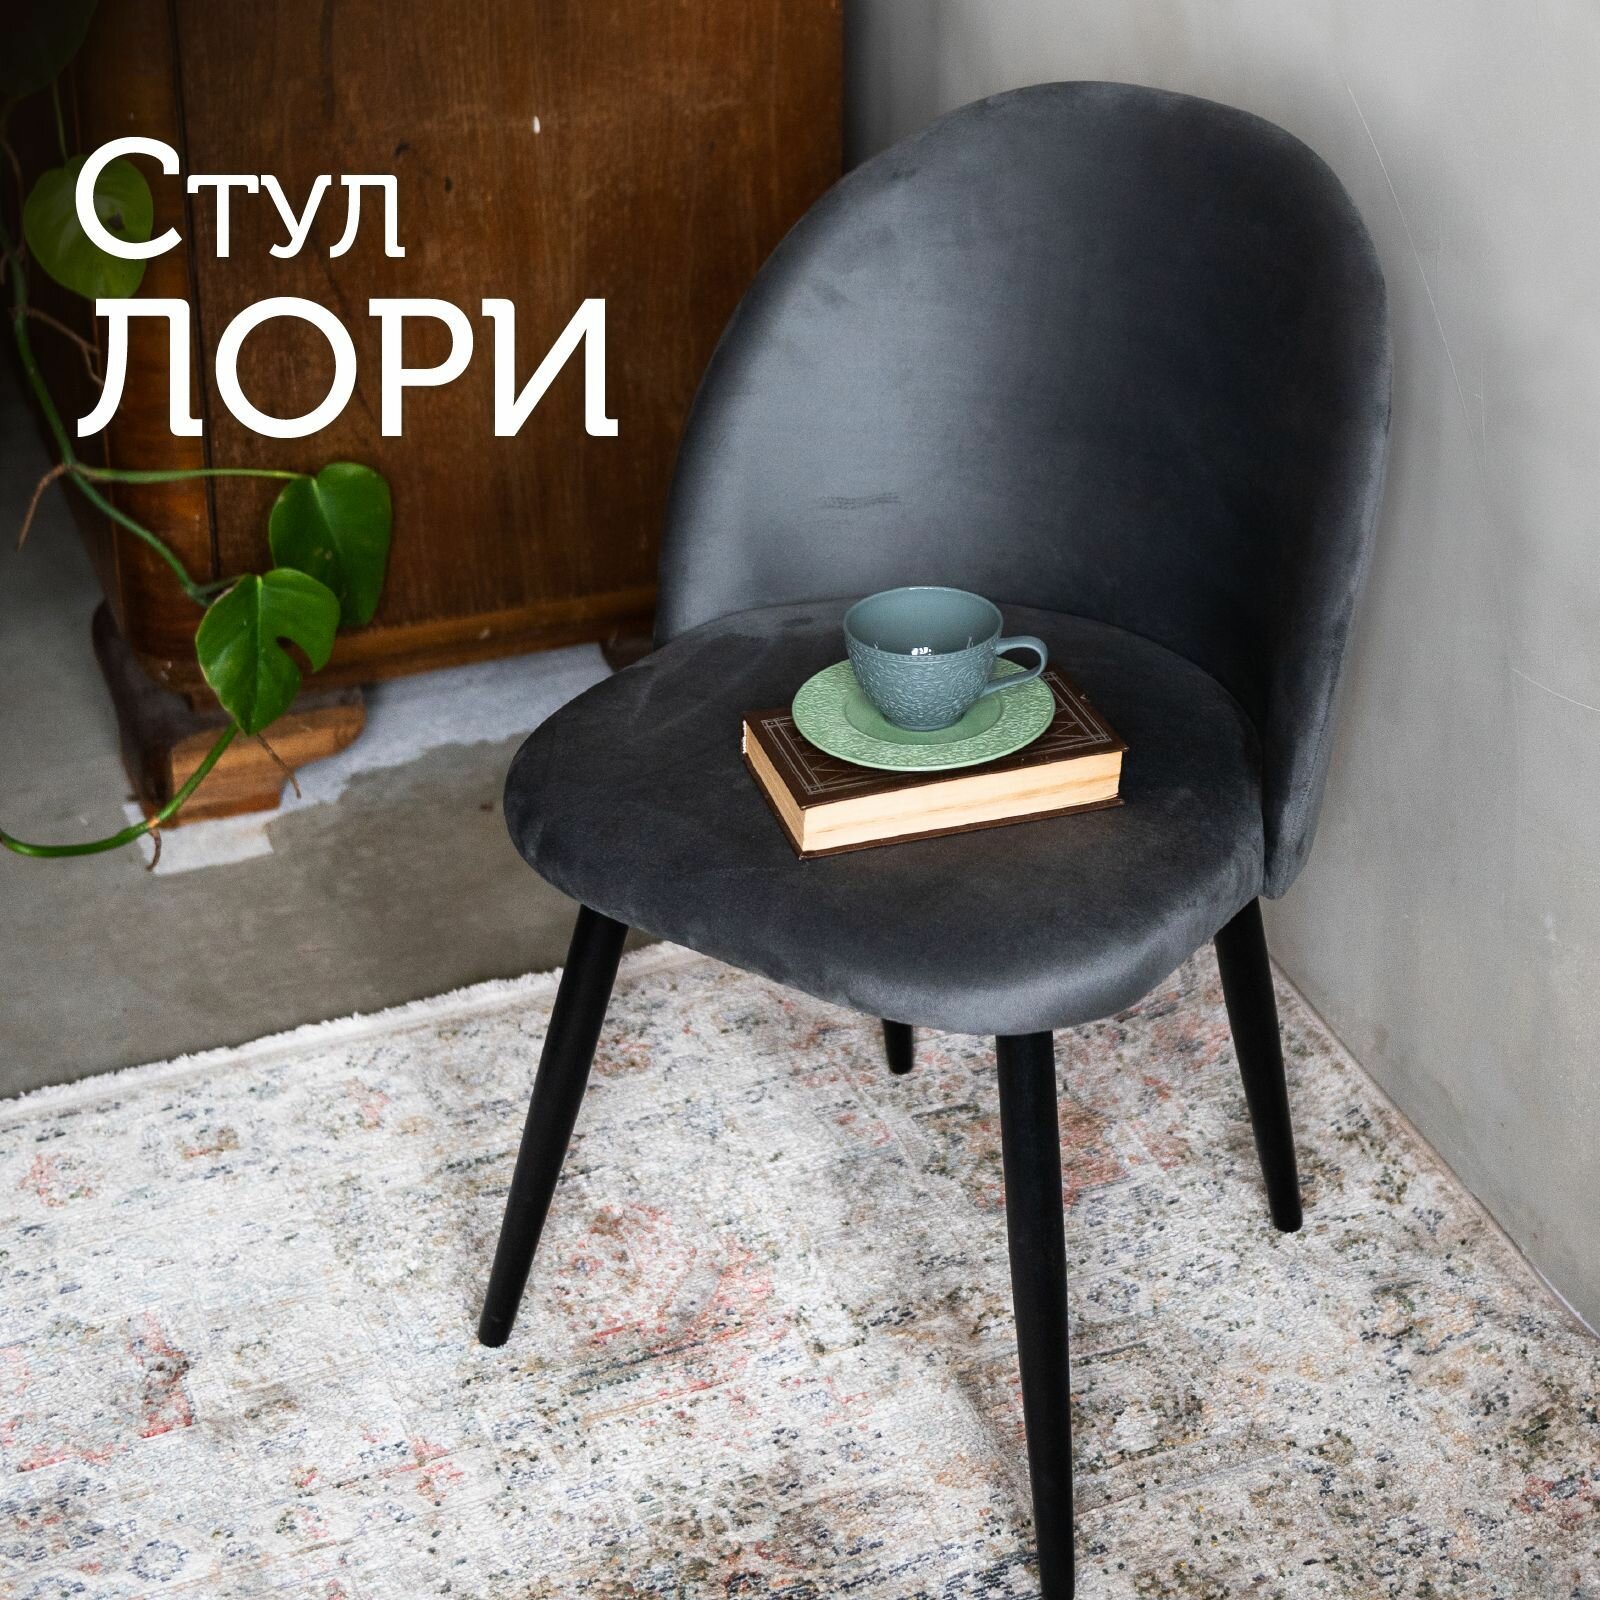 Мягкий стул кухонный со спинкой Лори, ножки деревянные, обеденный для кухни, гостиной, для дома, обивка вельвет темно-серый, АМИ мебель, Беларусь